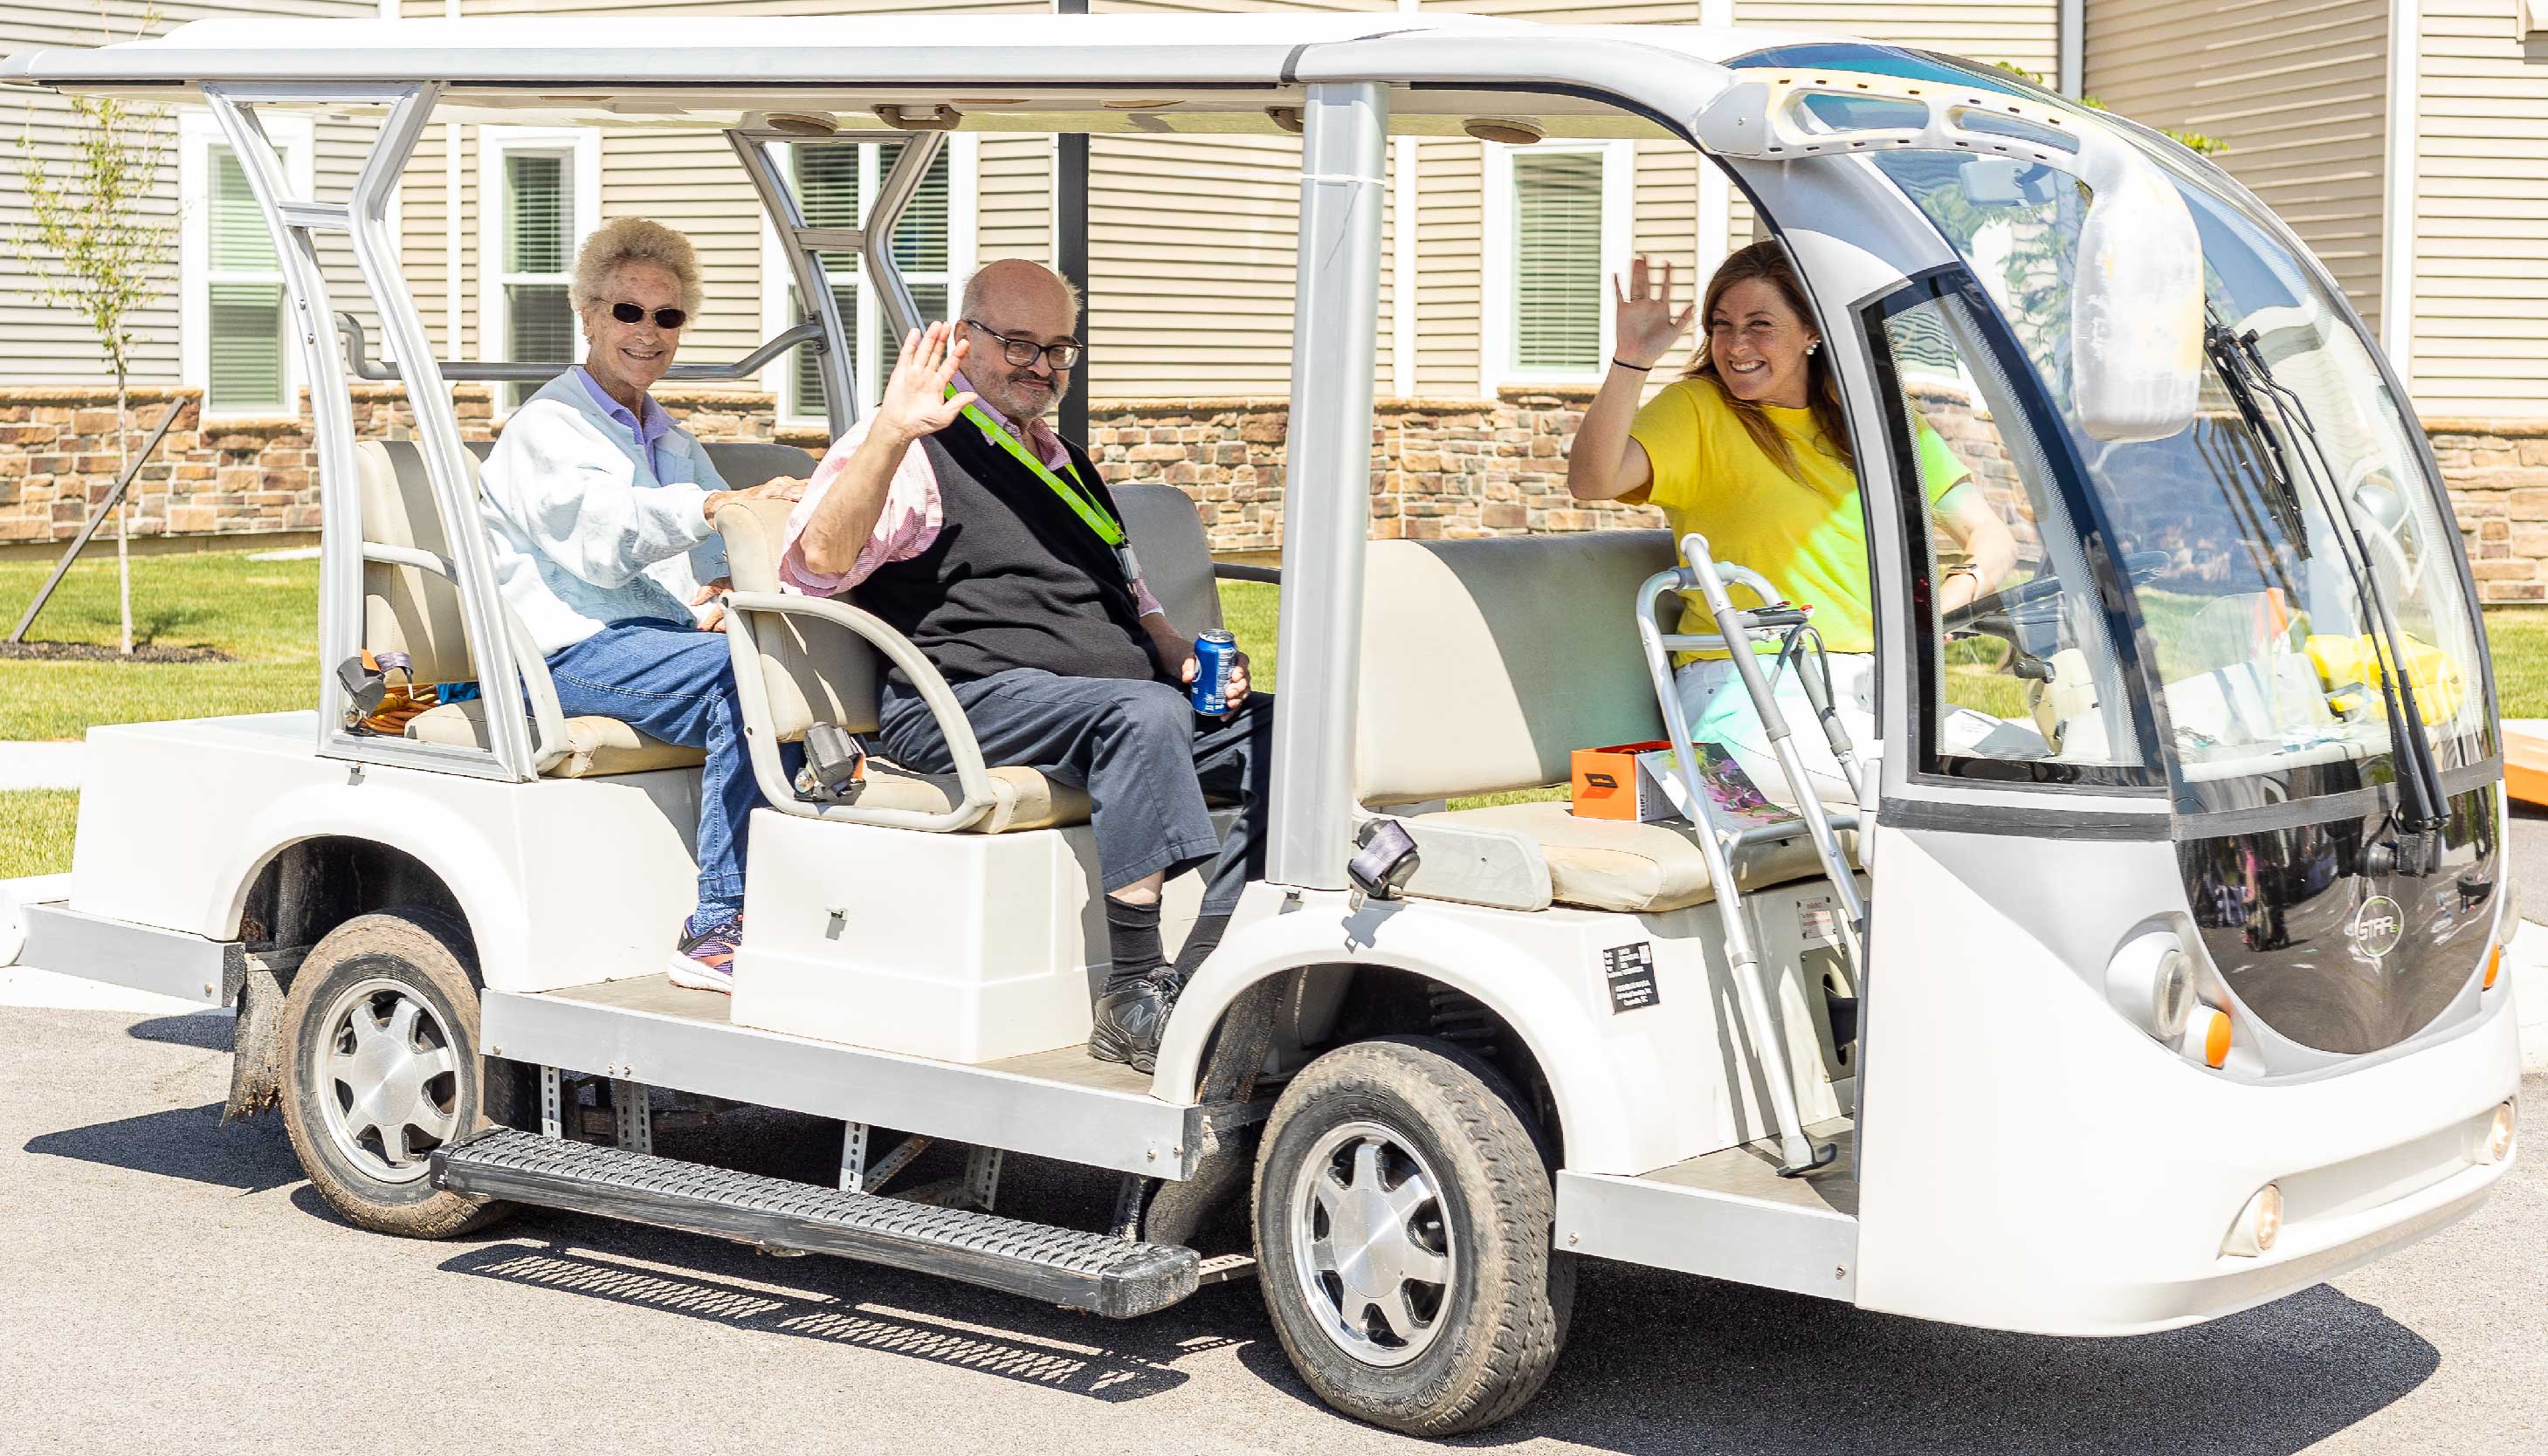 Otterbein Pemberville residents on a golf cart